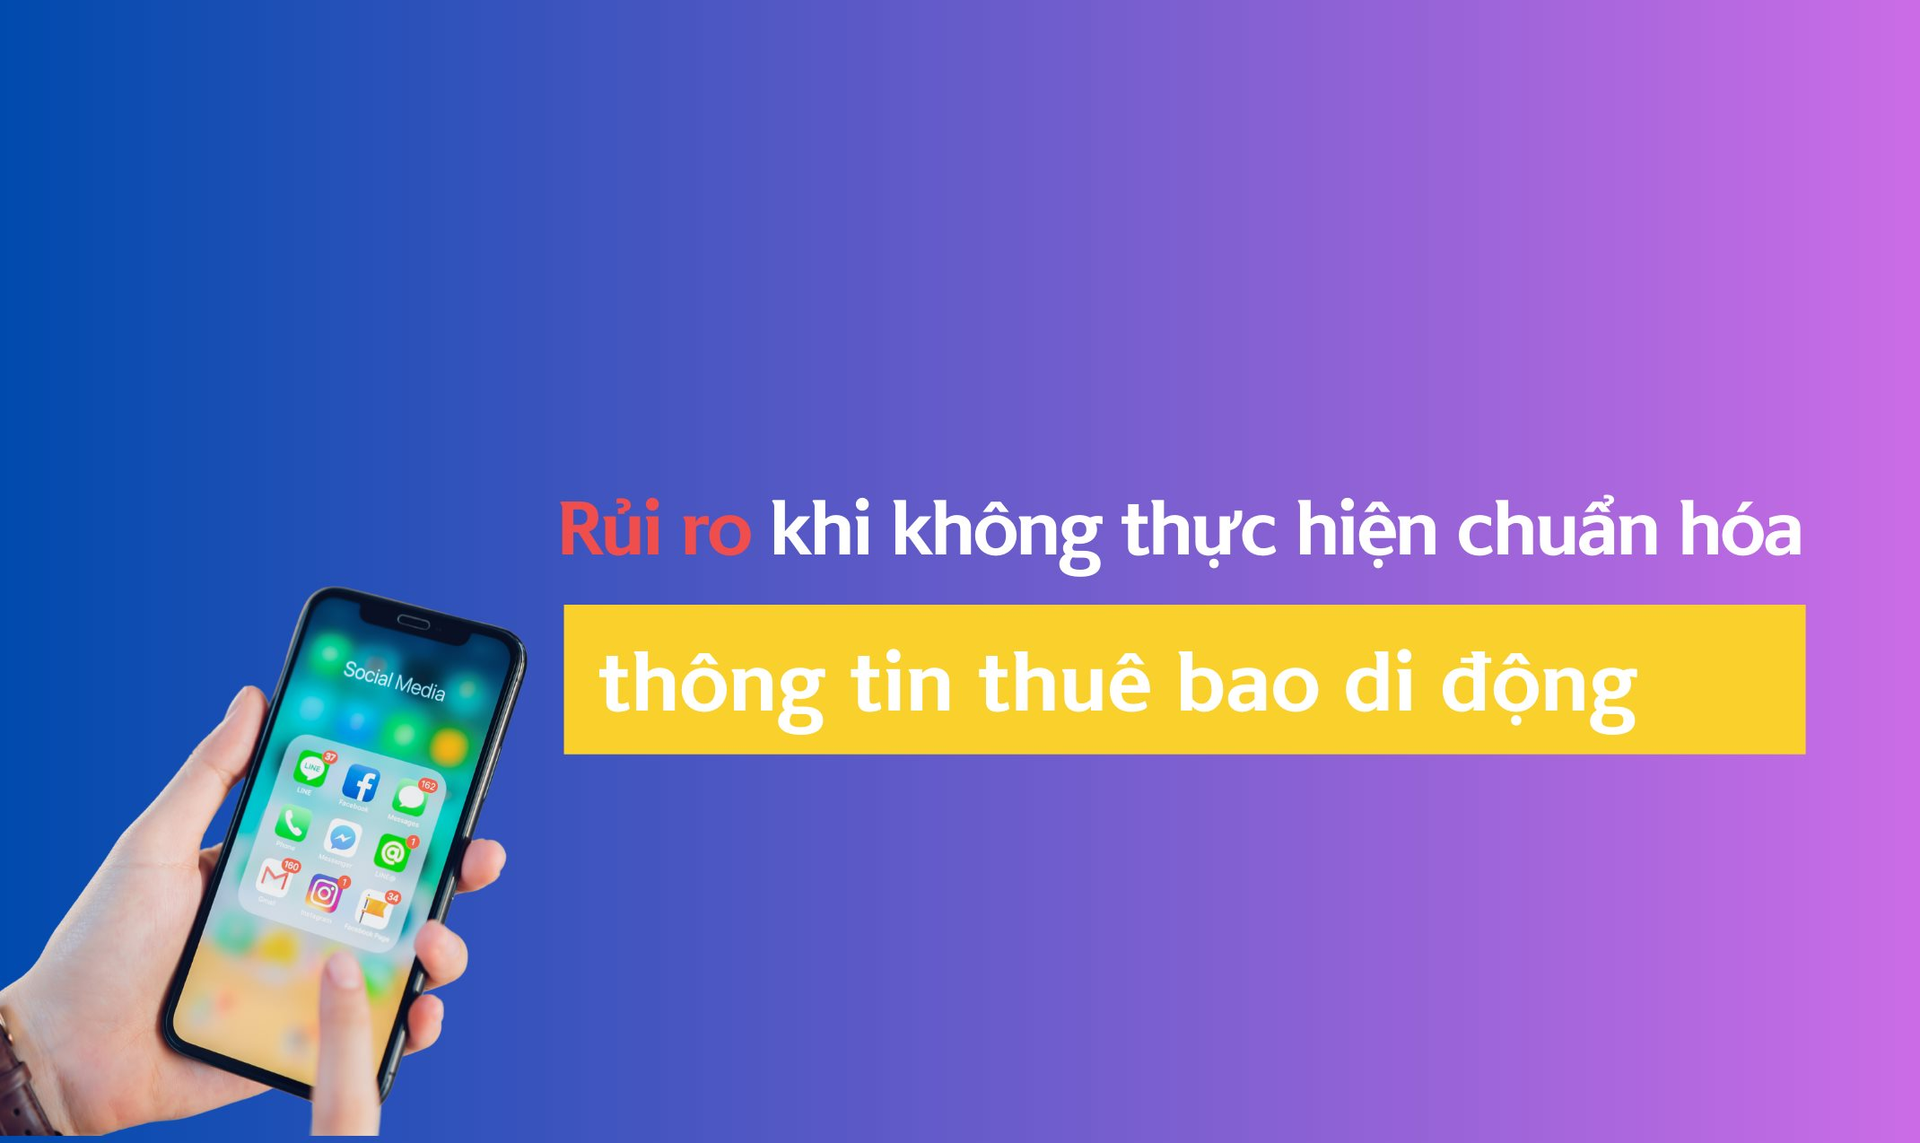 rui-ro-khi-khong-thuc-hien-chuan-hoa-thong-tin-thue-bao-di-dong-.png